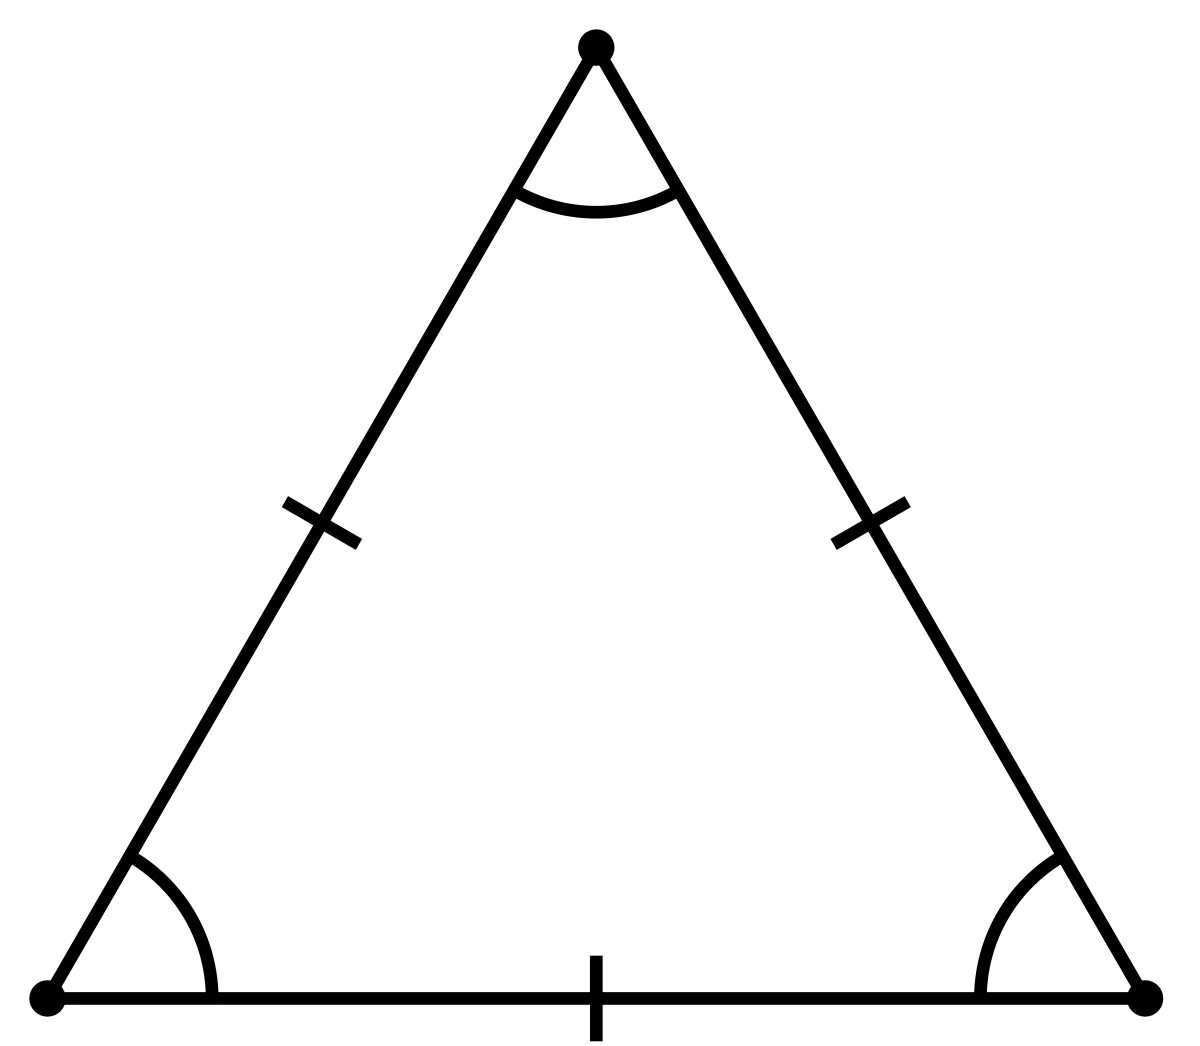 Равносторонний треугольник треугольник. Equilateral Triangle Formula. Правильный треугольник это равносторонний. Равносторонний треугольник в равностороннем треугольнике.